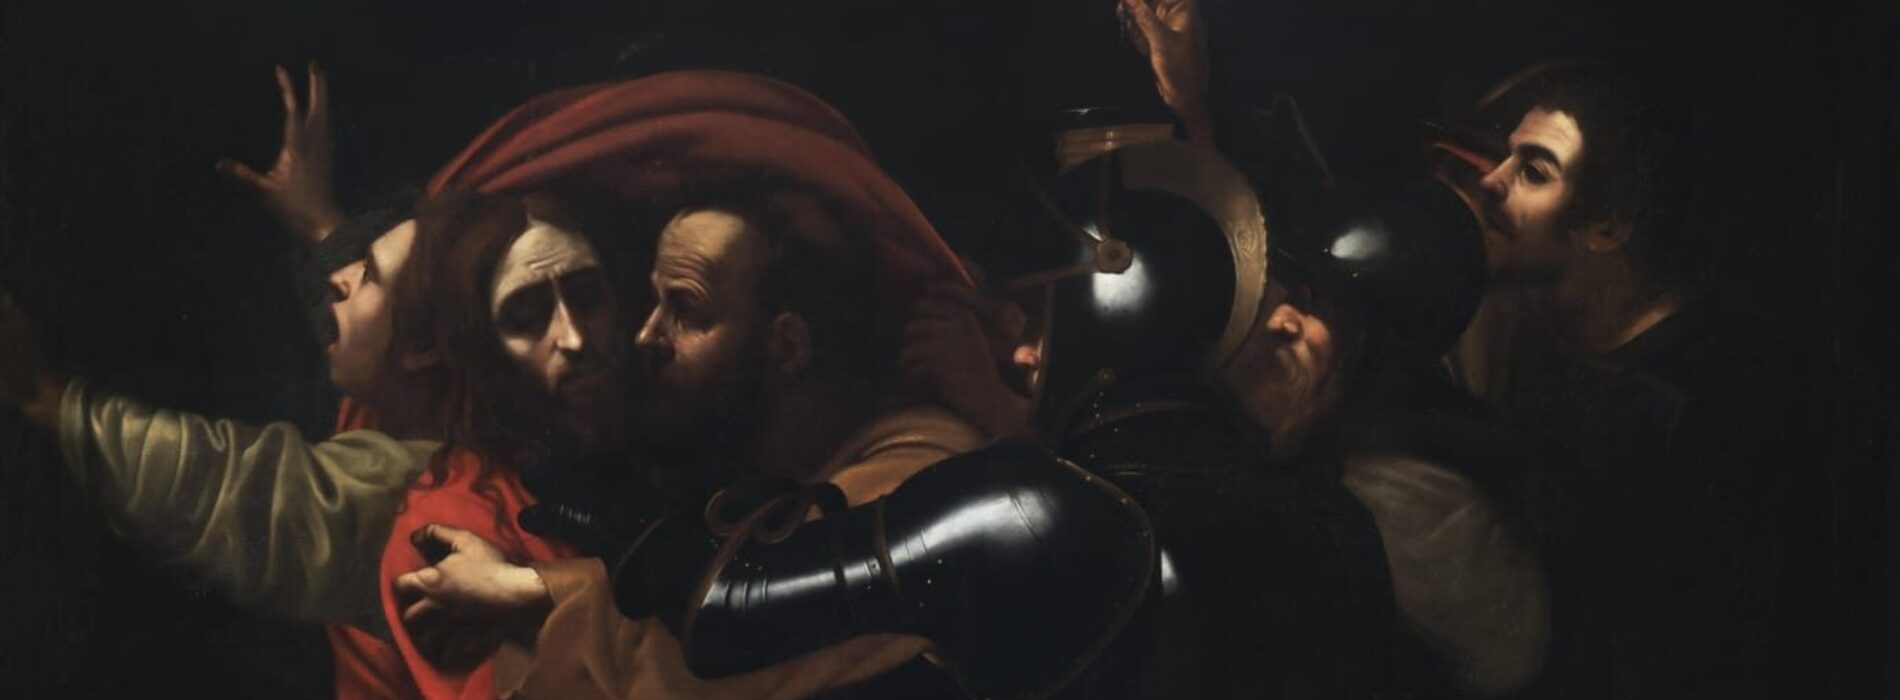 La presa di Cristo, il capolavoro di Caravaggio a Palazzo Ricca